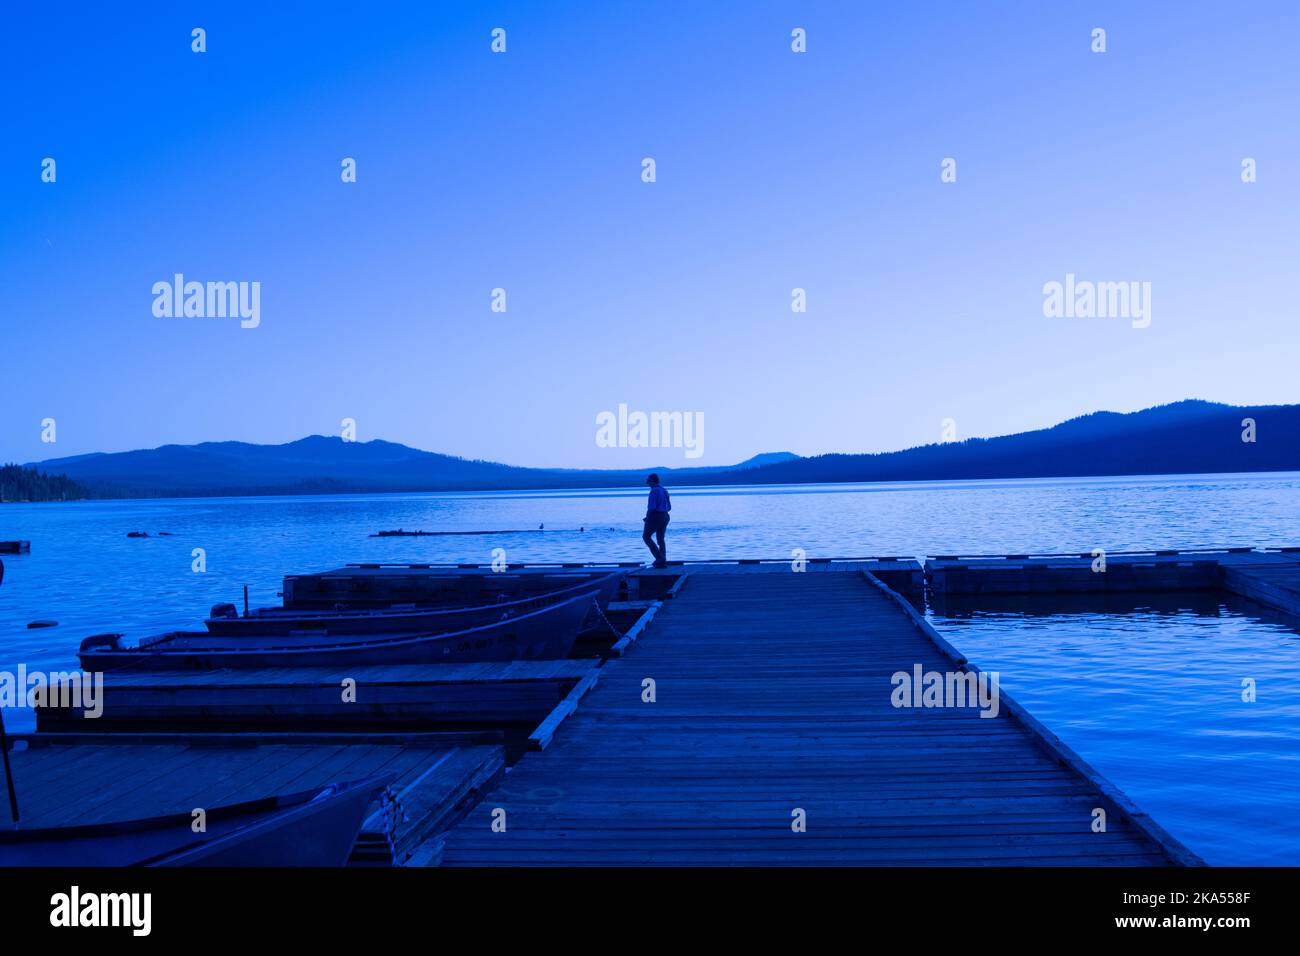 Eine Einzelperson, die auf einem hölzernen Bootssteg steht, mit Landschaft in blauem Licht. Stockfoto